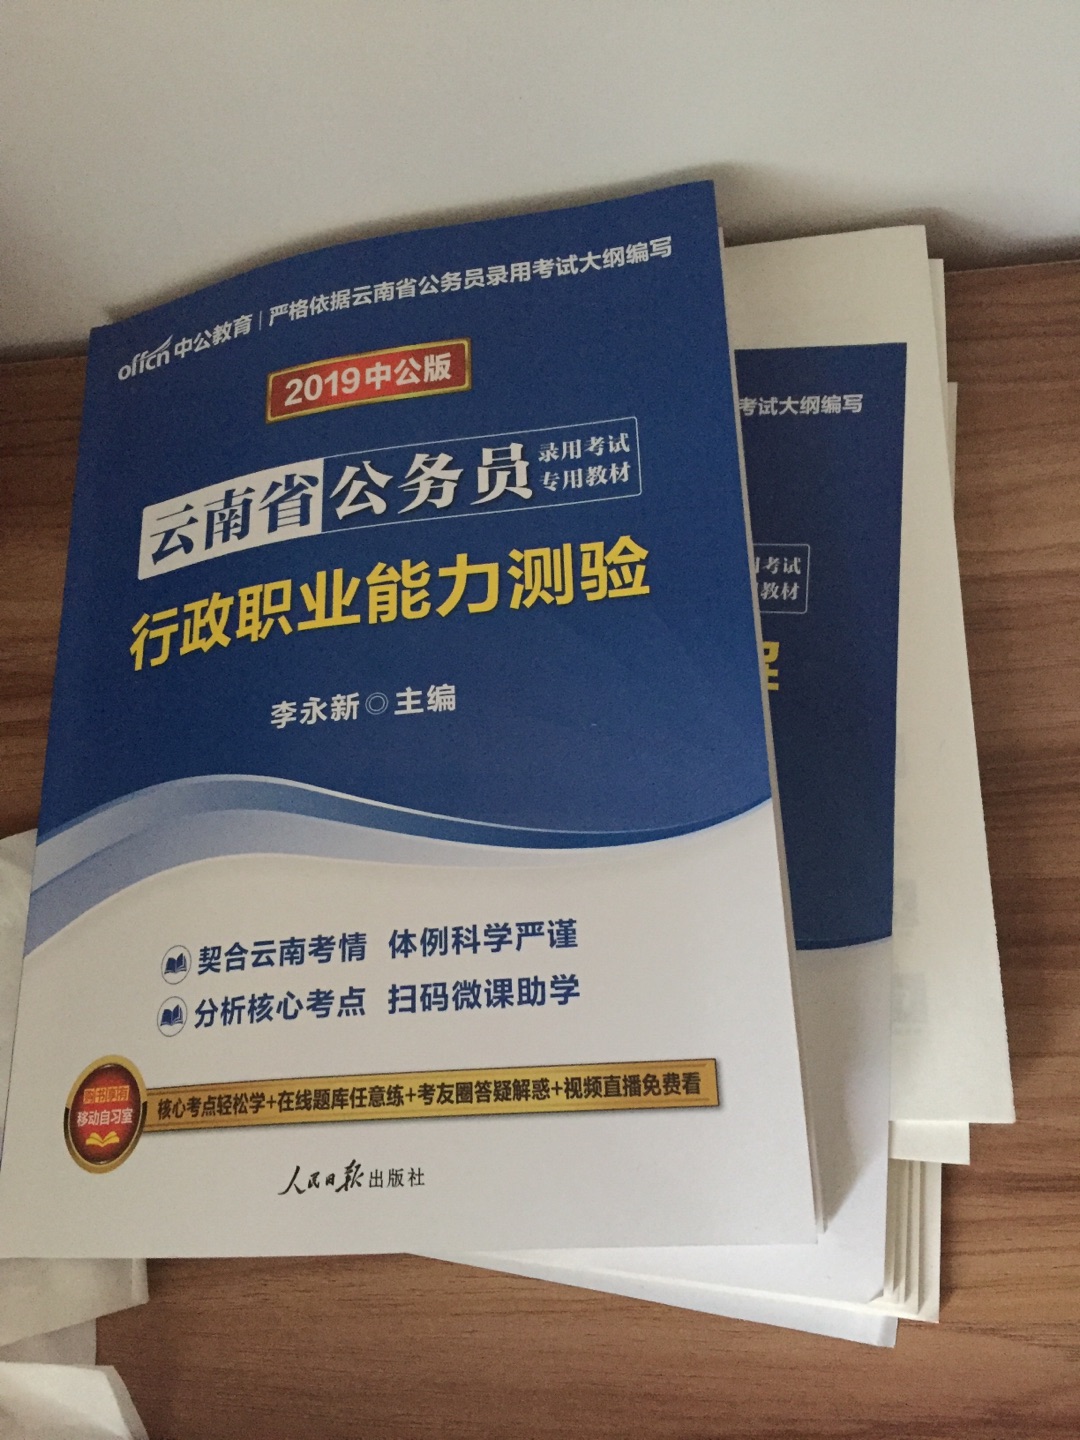 已经在看了 备战2019云南省考 就书而言 还可以 希望有帮助